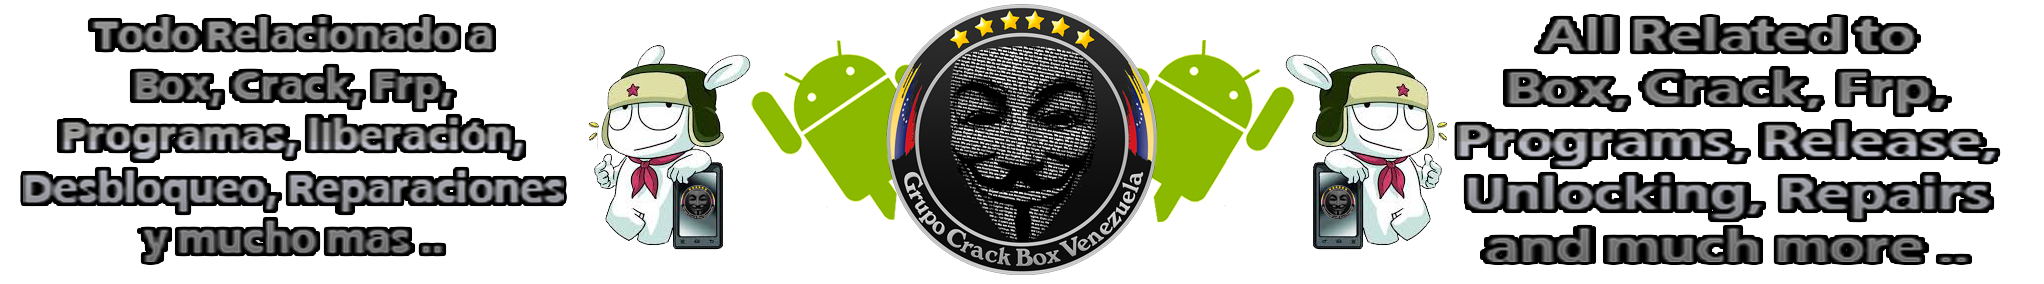 Grupo Crack Box Venezuela